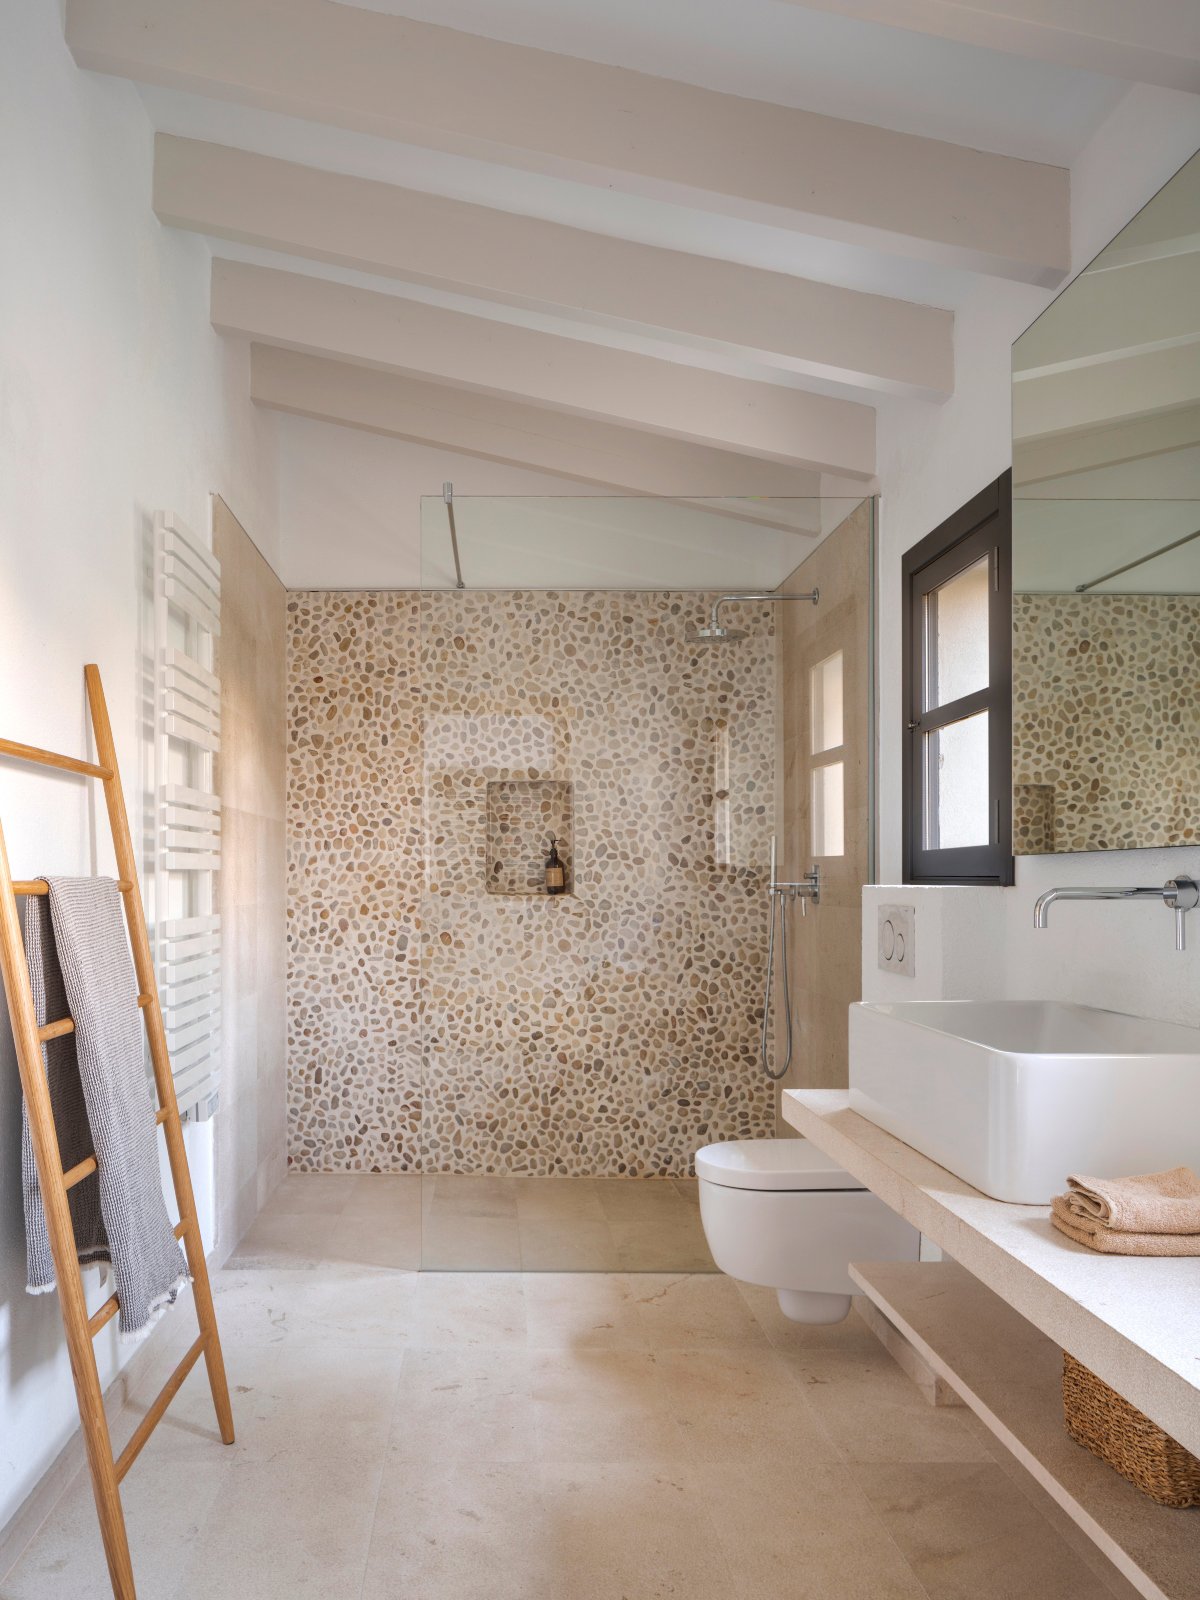 Baño con ventana con pared de la ducha en piedra